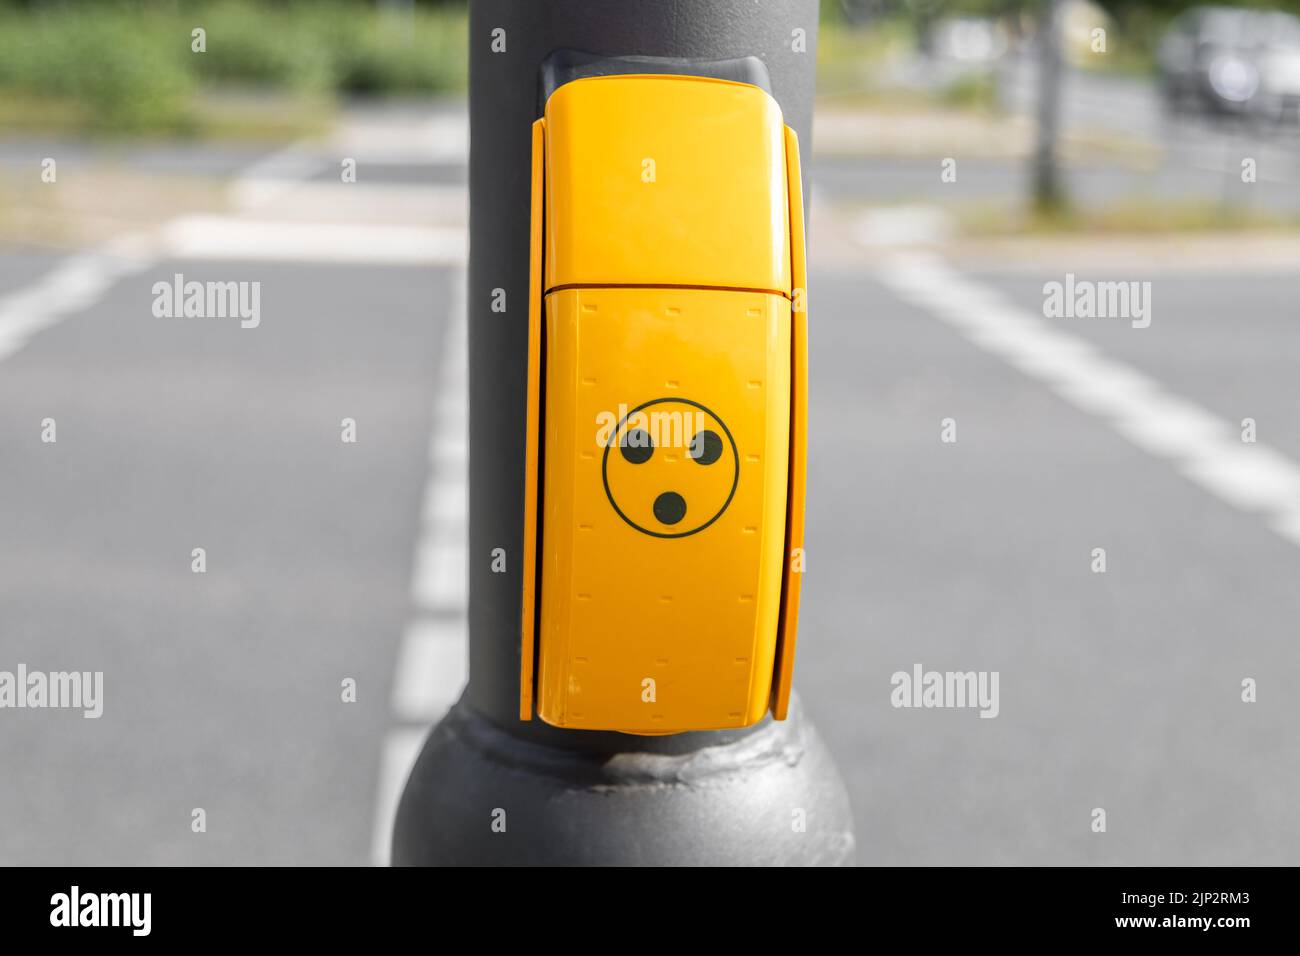 Pulsante giallo per i non vedenti, disabili o disabili al semaforo per ottenere un segnale acustico quando il semaforo è verde per attraversare la strada Foto Stock